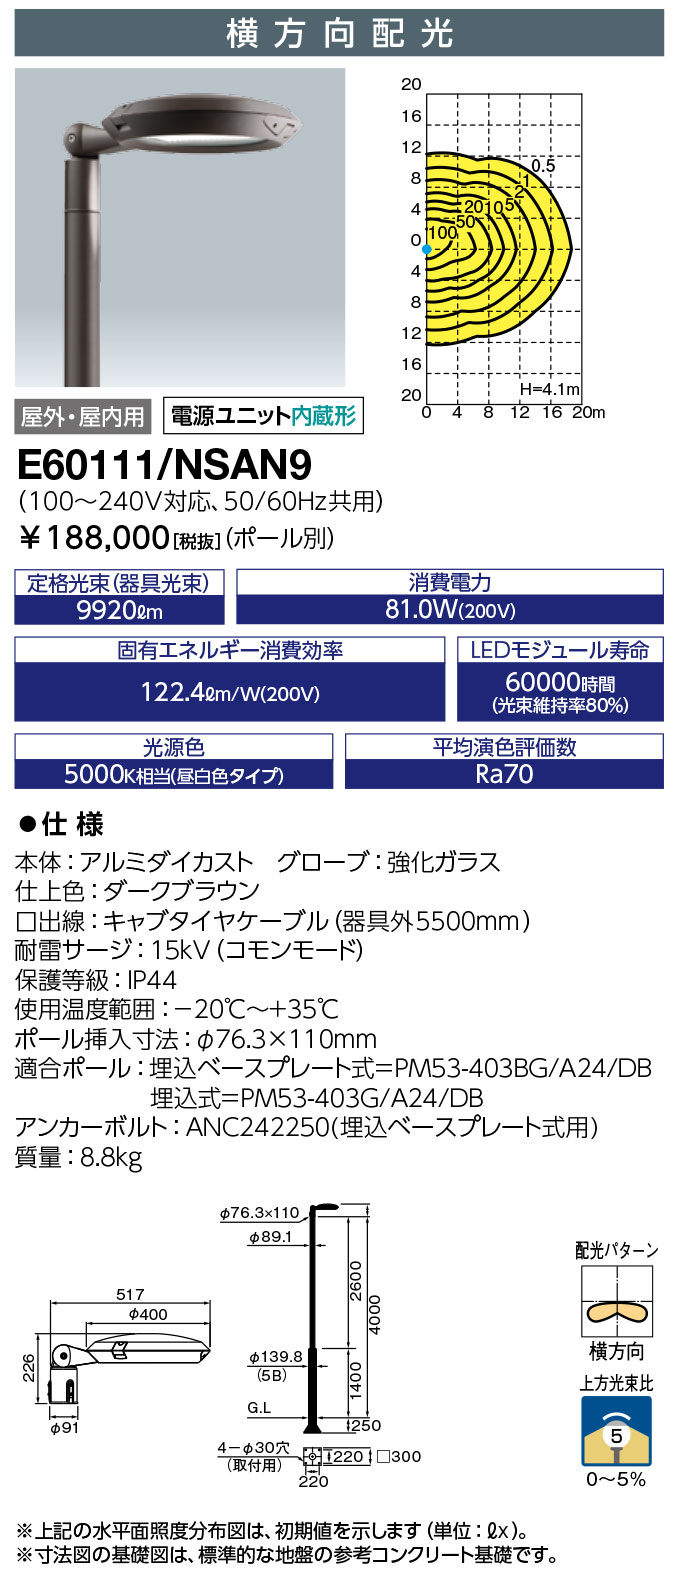 岩崎電気  E60111 NSAN9　 LEDポールライト レディオック エリア テンド  水銀ランプ300W相当 昼白色タイプ (E60111NSAN9)